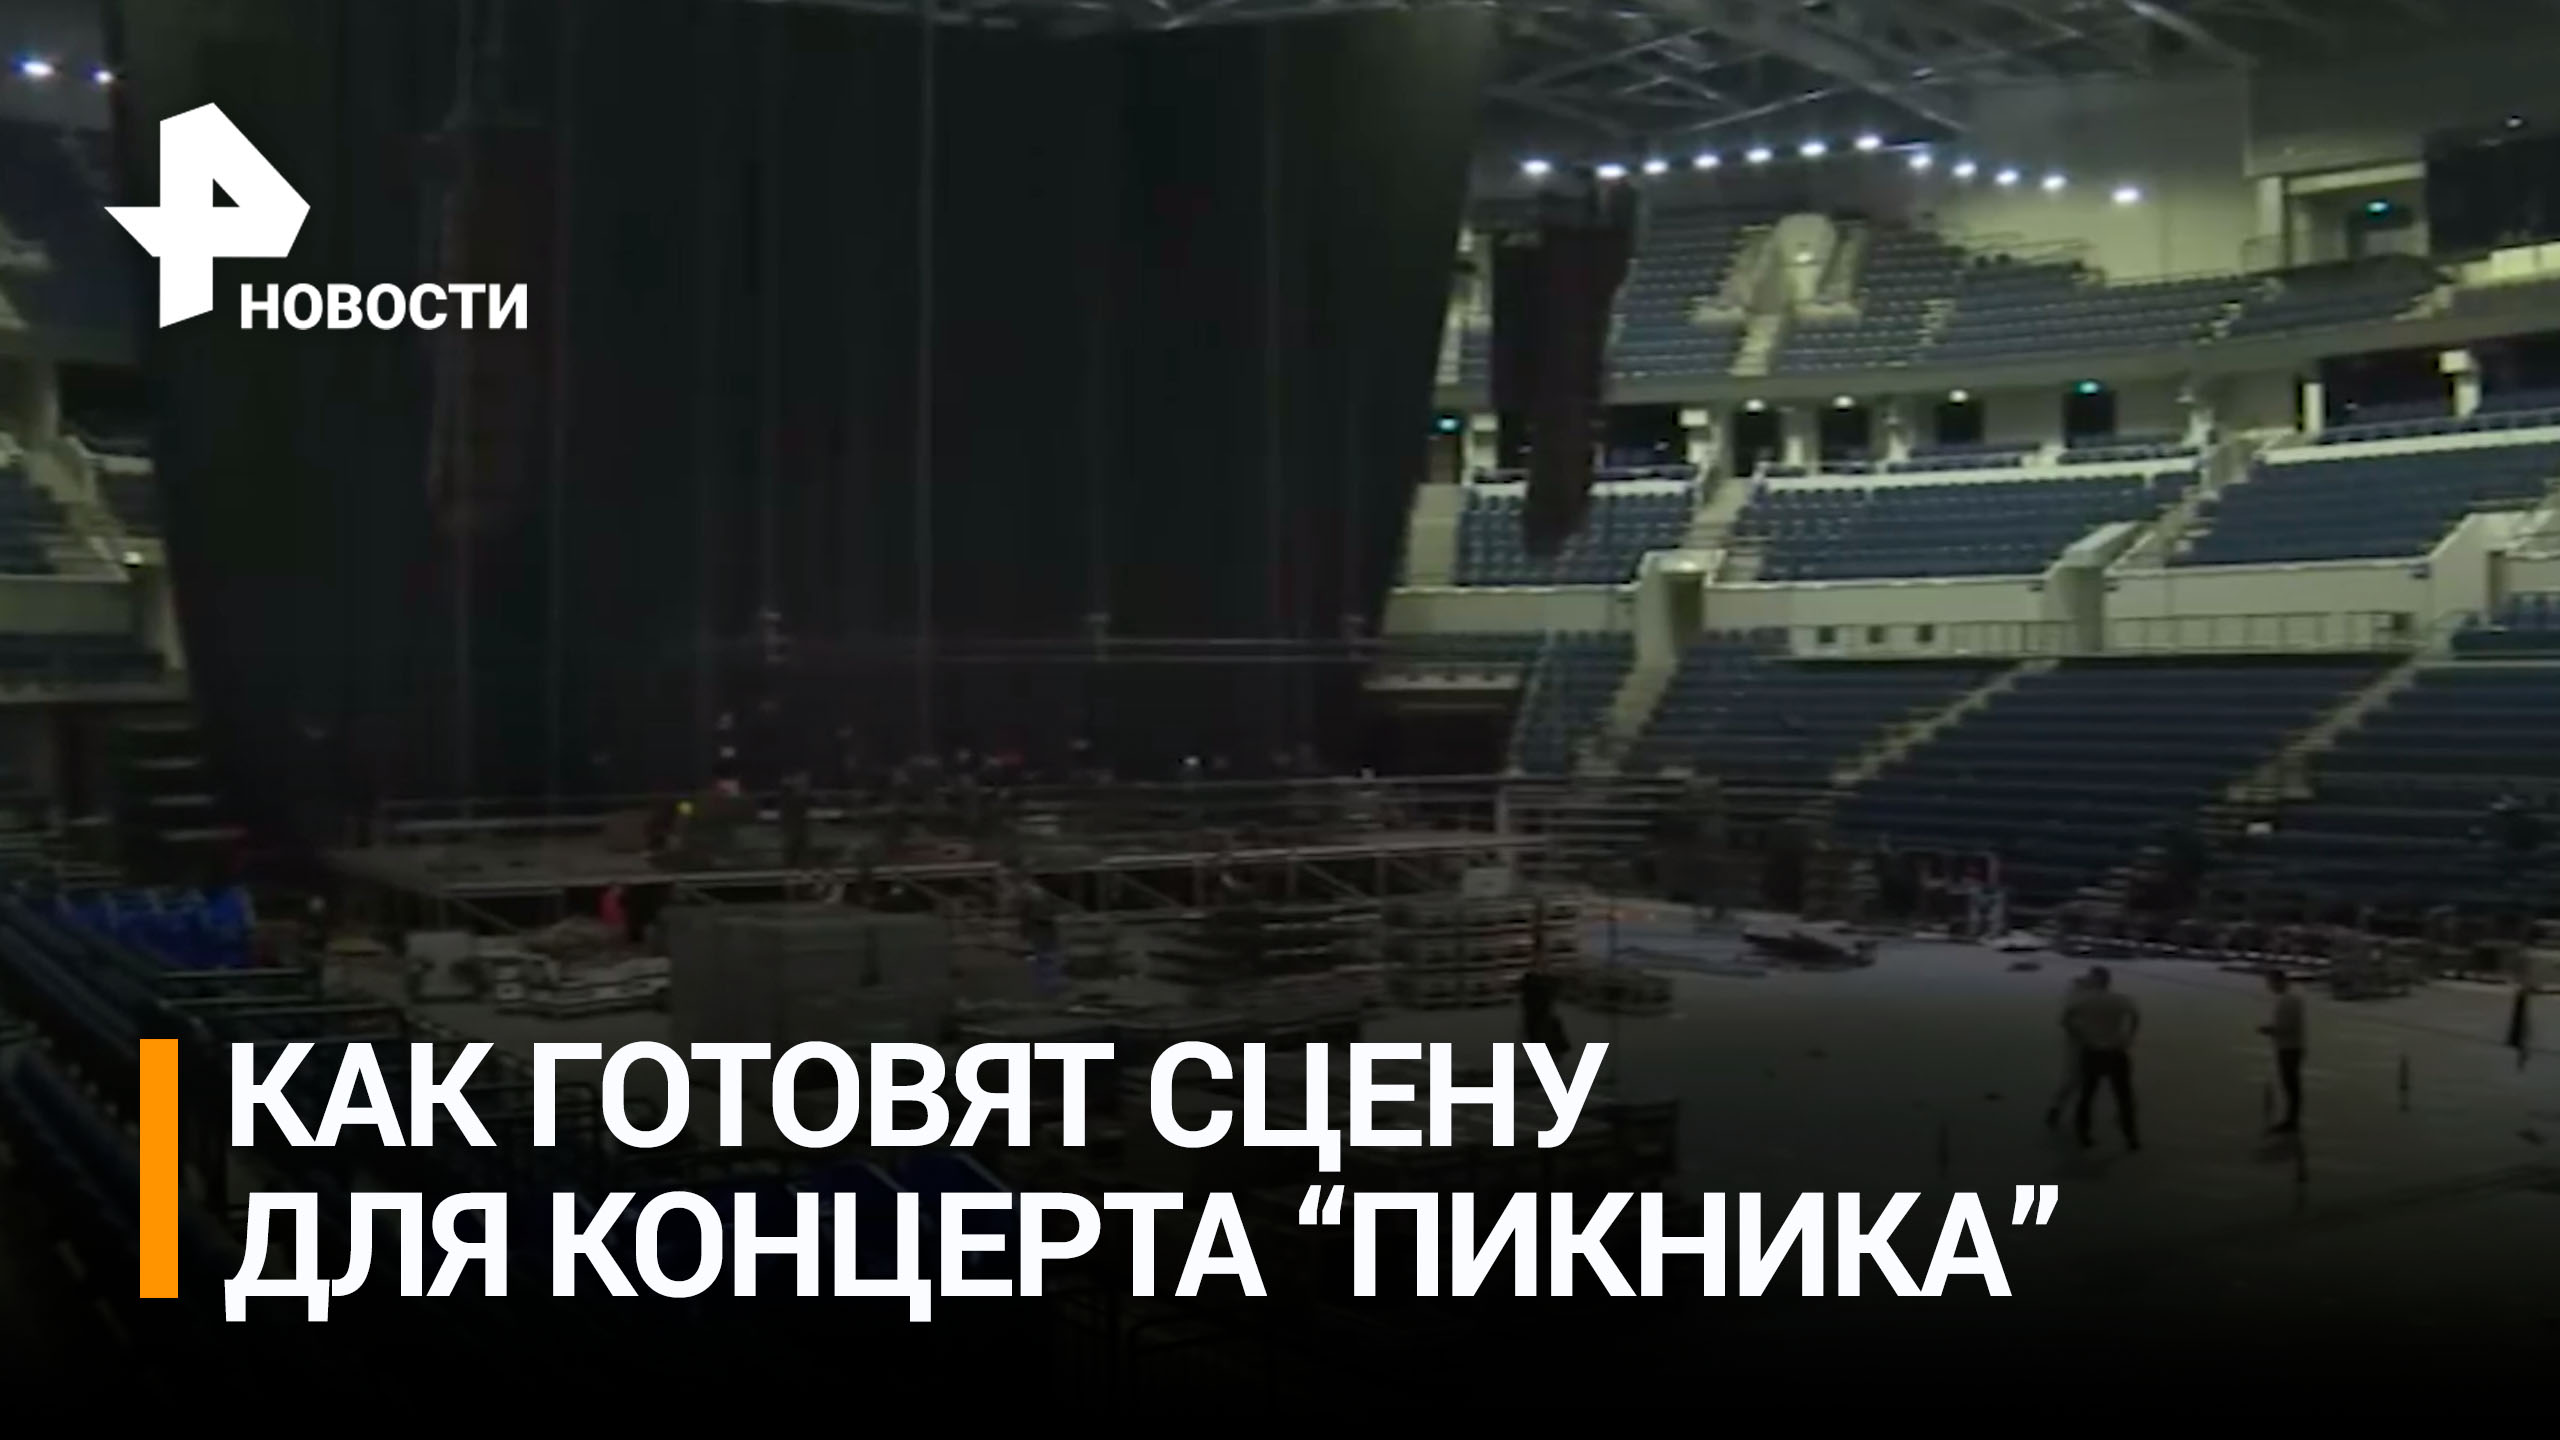 В Москве готовятся к концерту группы "Пикник". Рабочие устанавливают сцену и монтируют оборудование